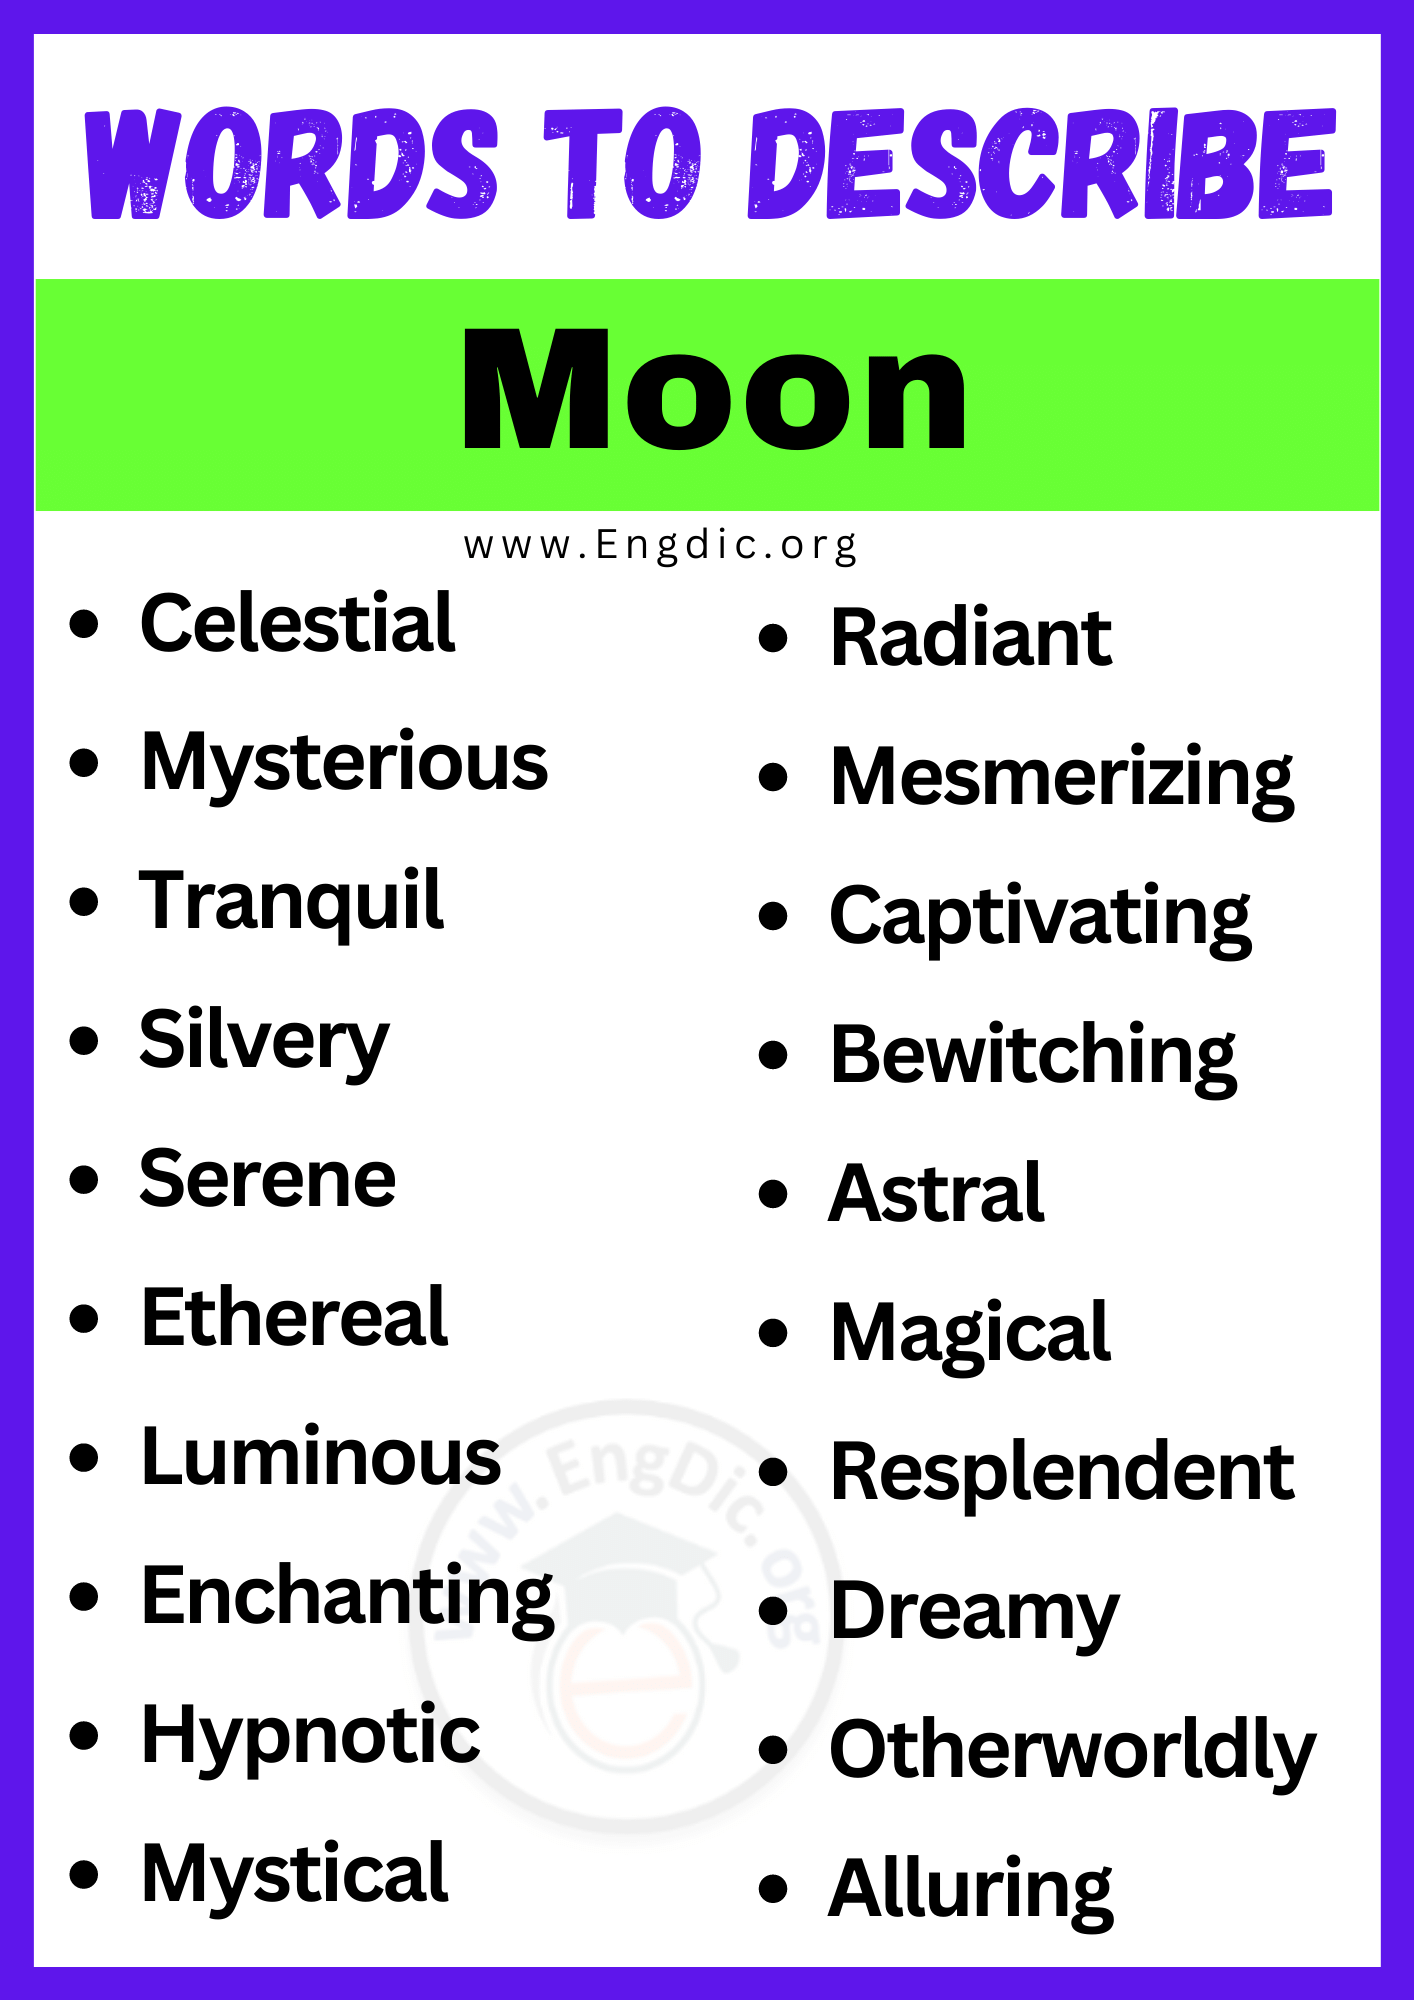 Words to Describe a Moon